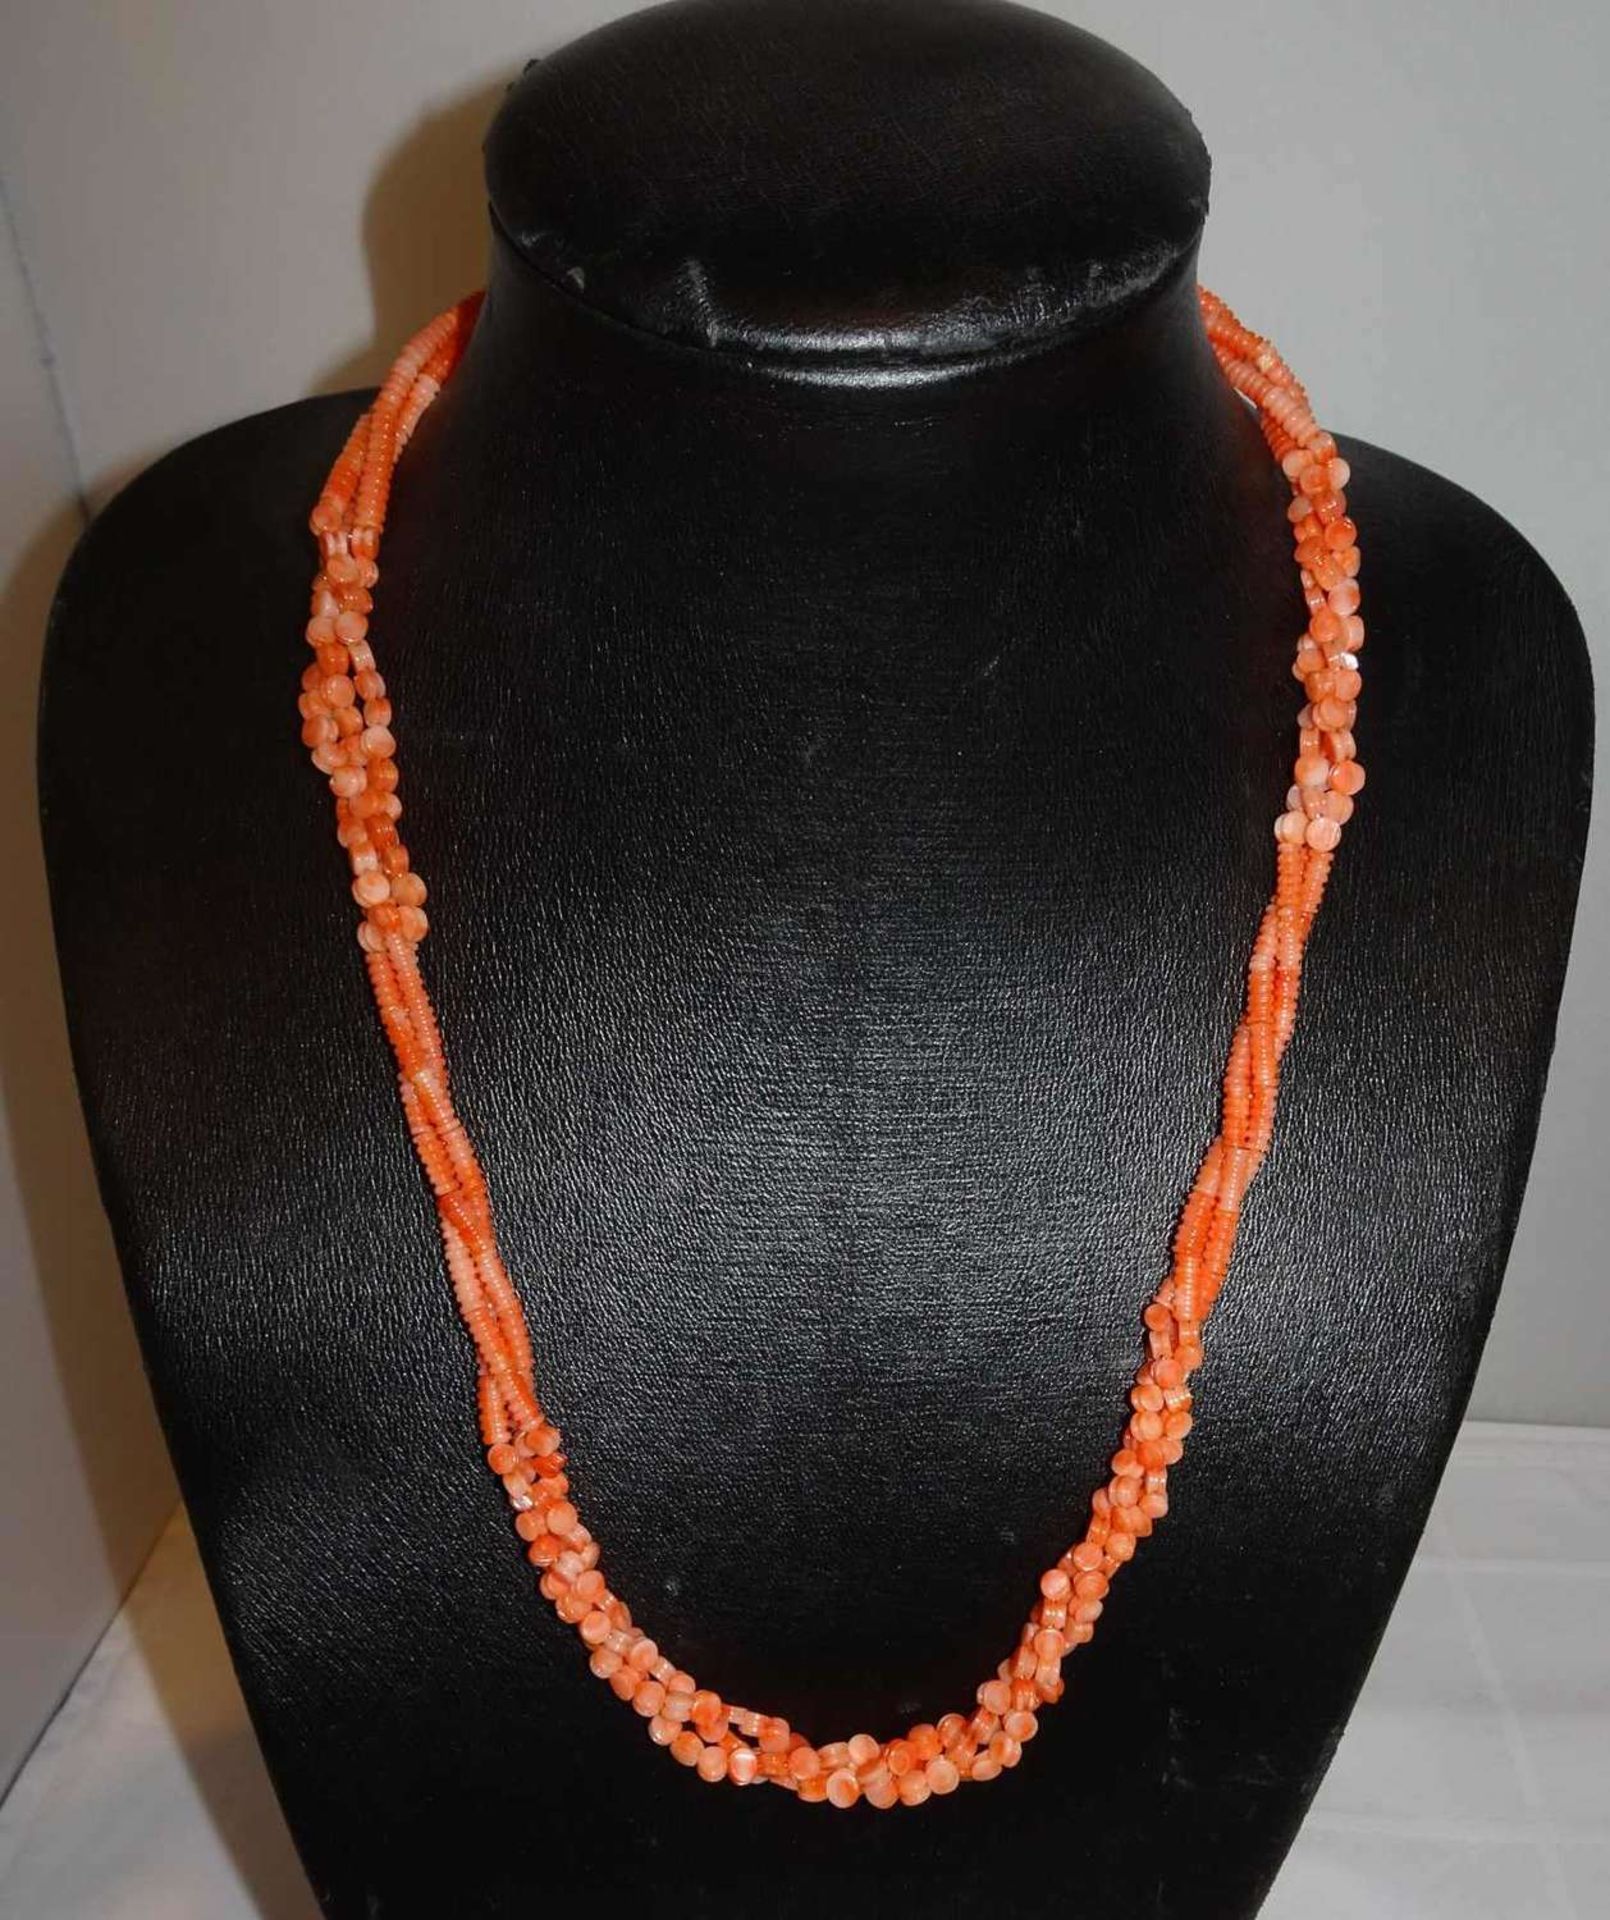 Engelshautkorallenkette mit Metallverschluß. Länge ca. 59 cm Angel skin coral necklace with metal